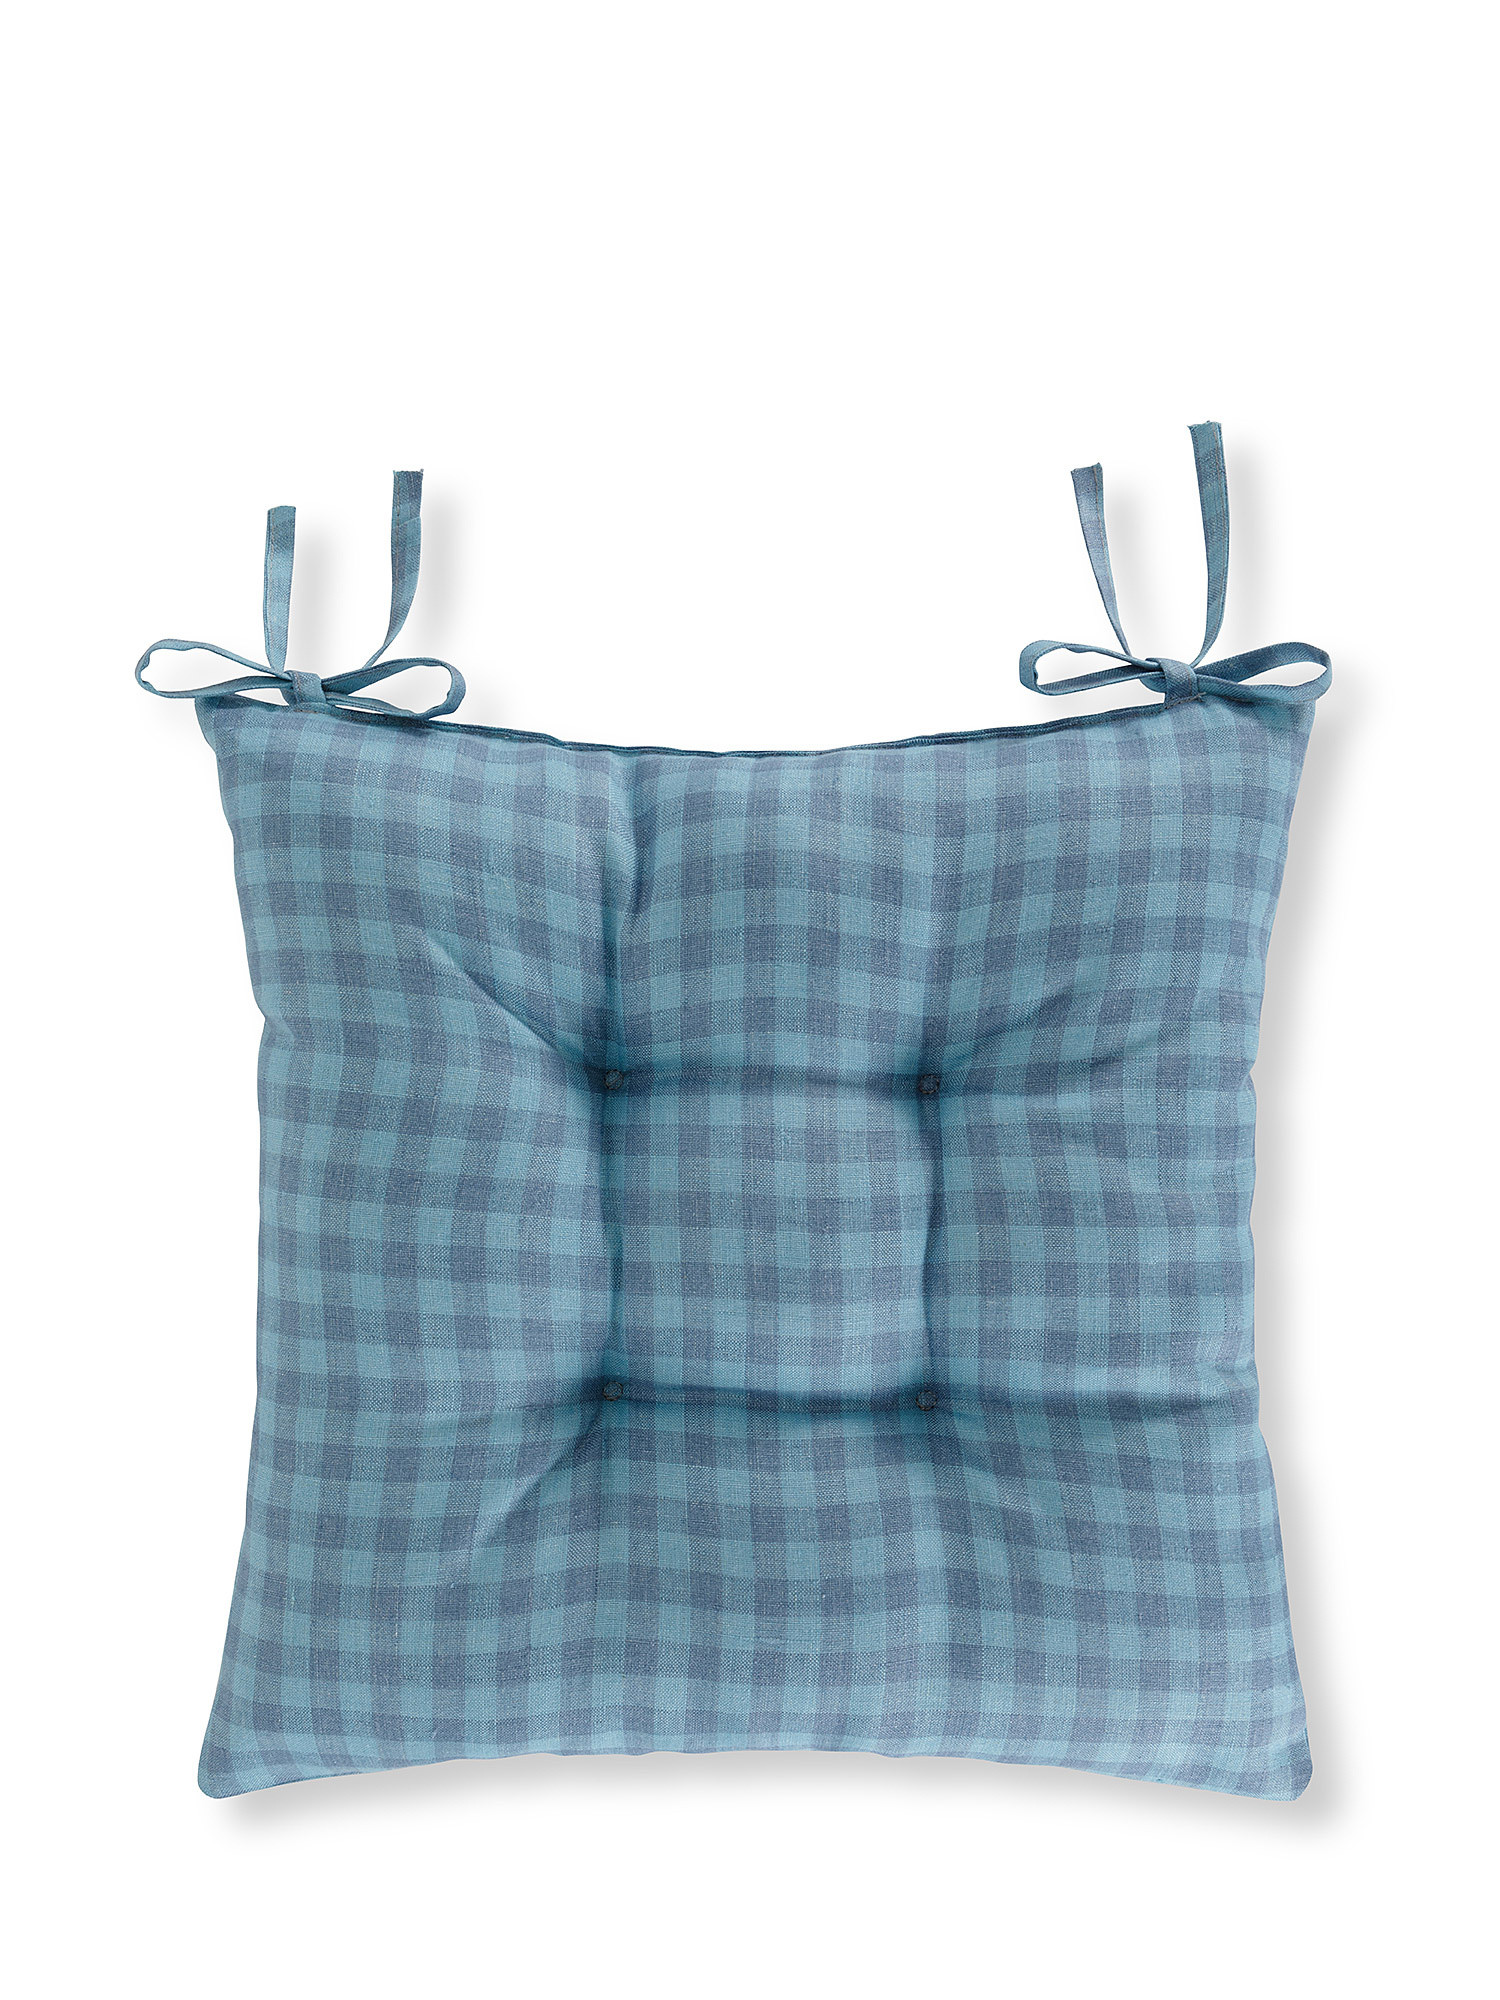 Cuscino da sedia puro lino motivo vichy, Azzurro, large image number 0